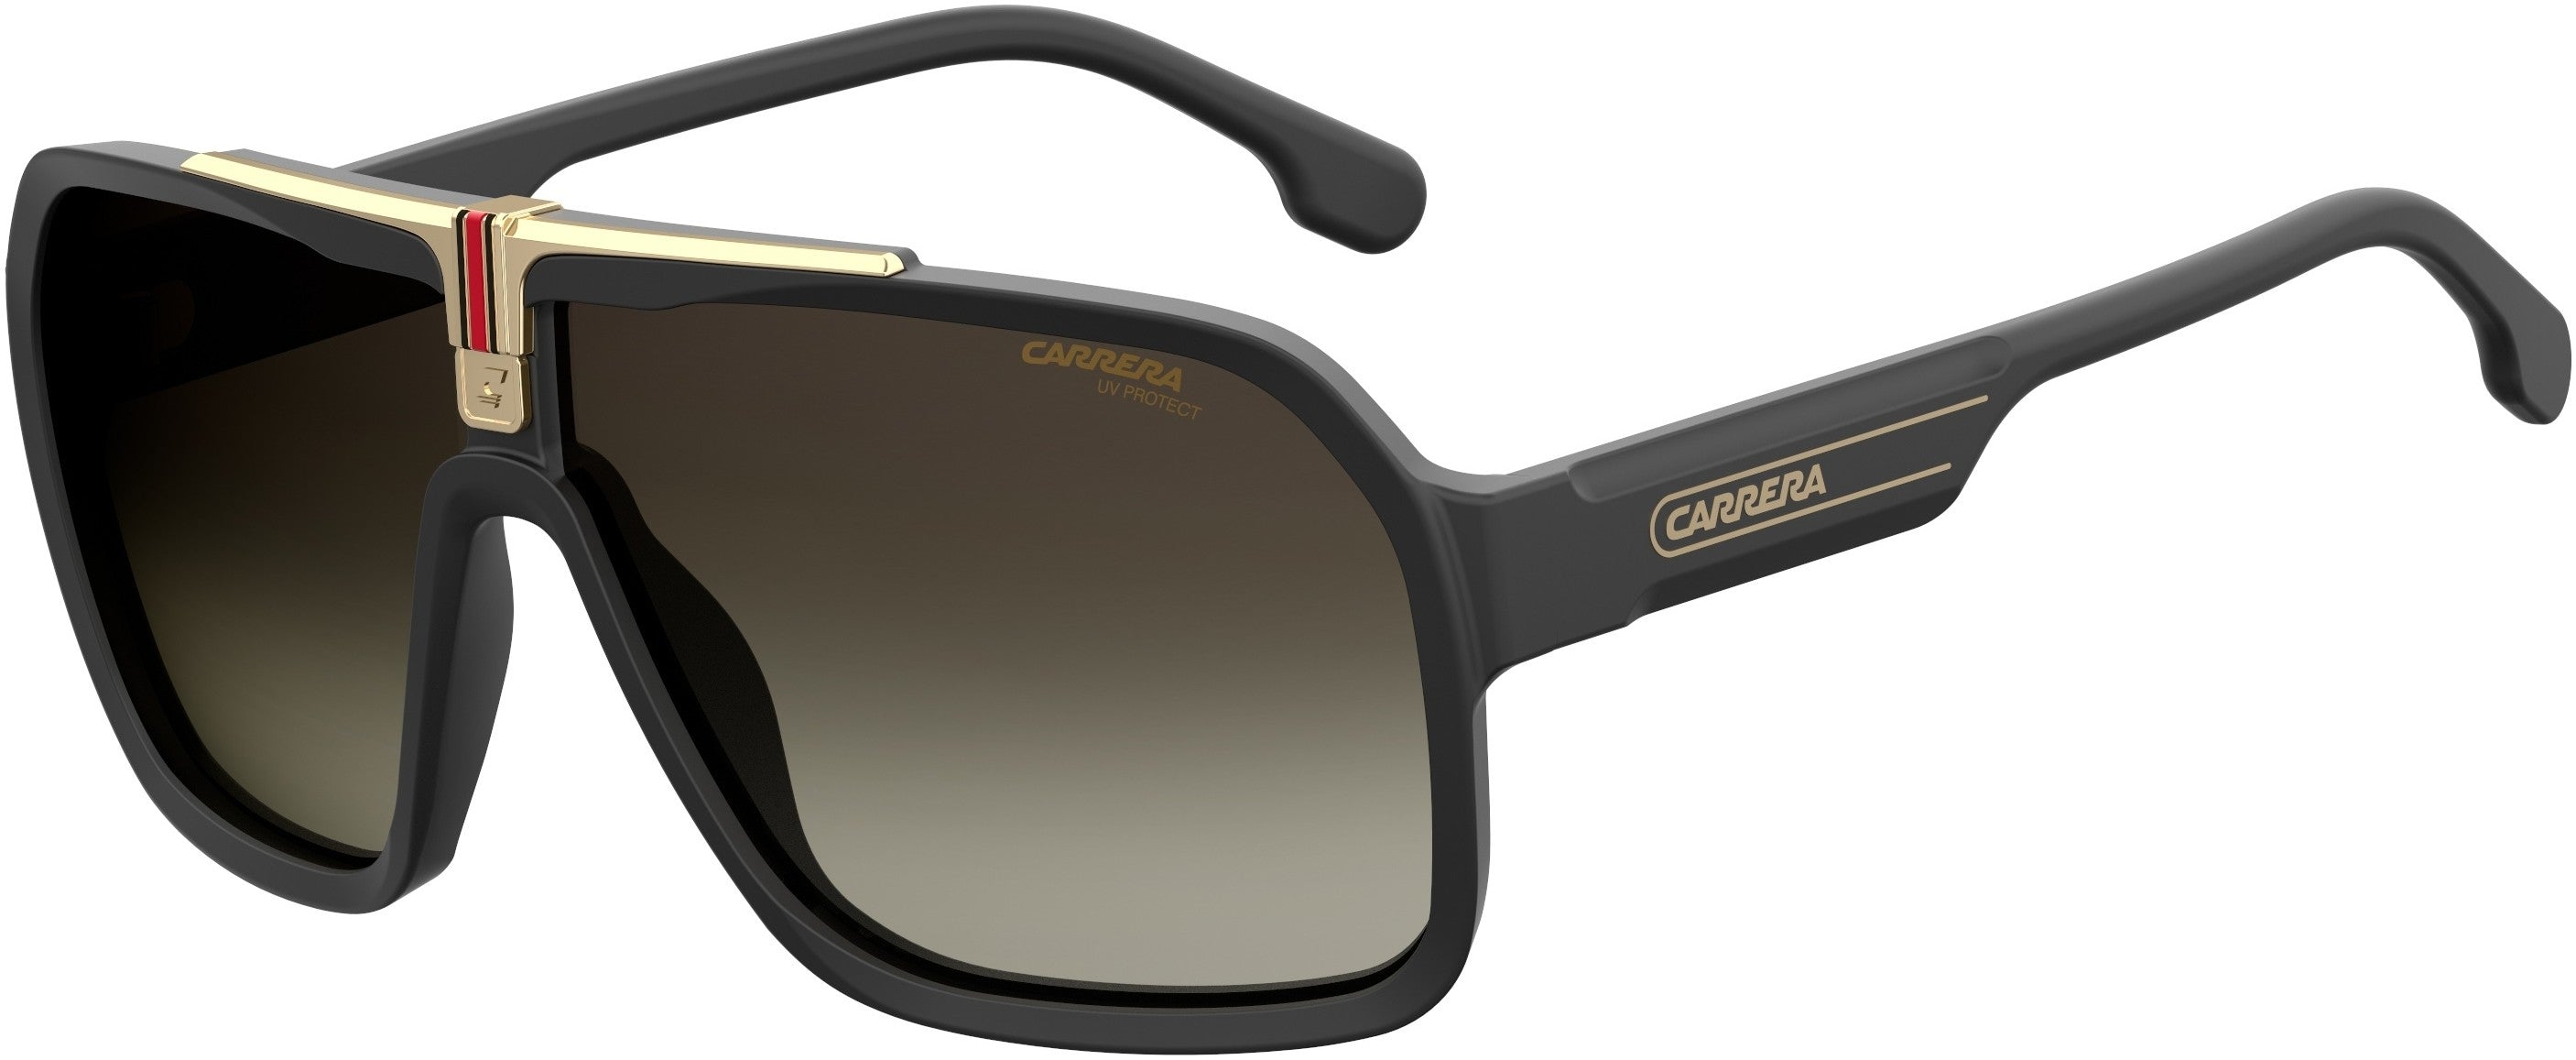  Carrera 1014/S Navigator Sunglasses 0807-0807  Black (HA Brown Gradient)